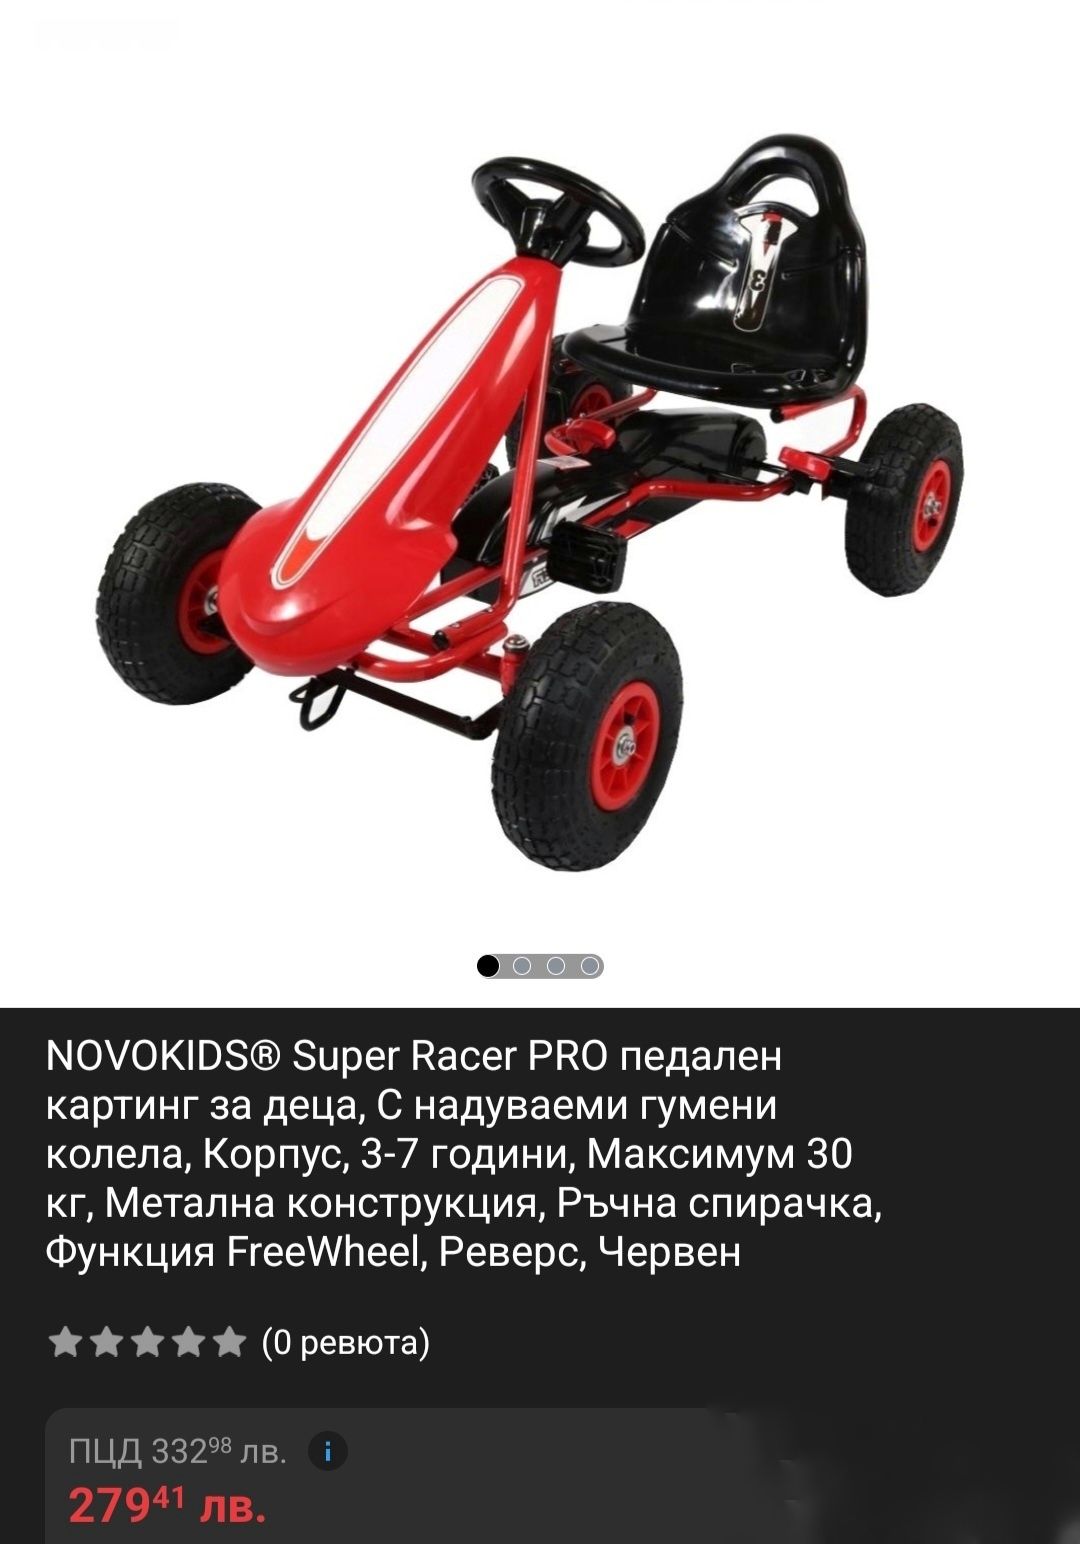 Картинг за деца Super Racer